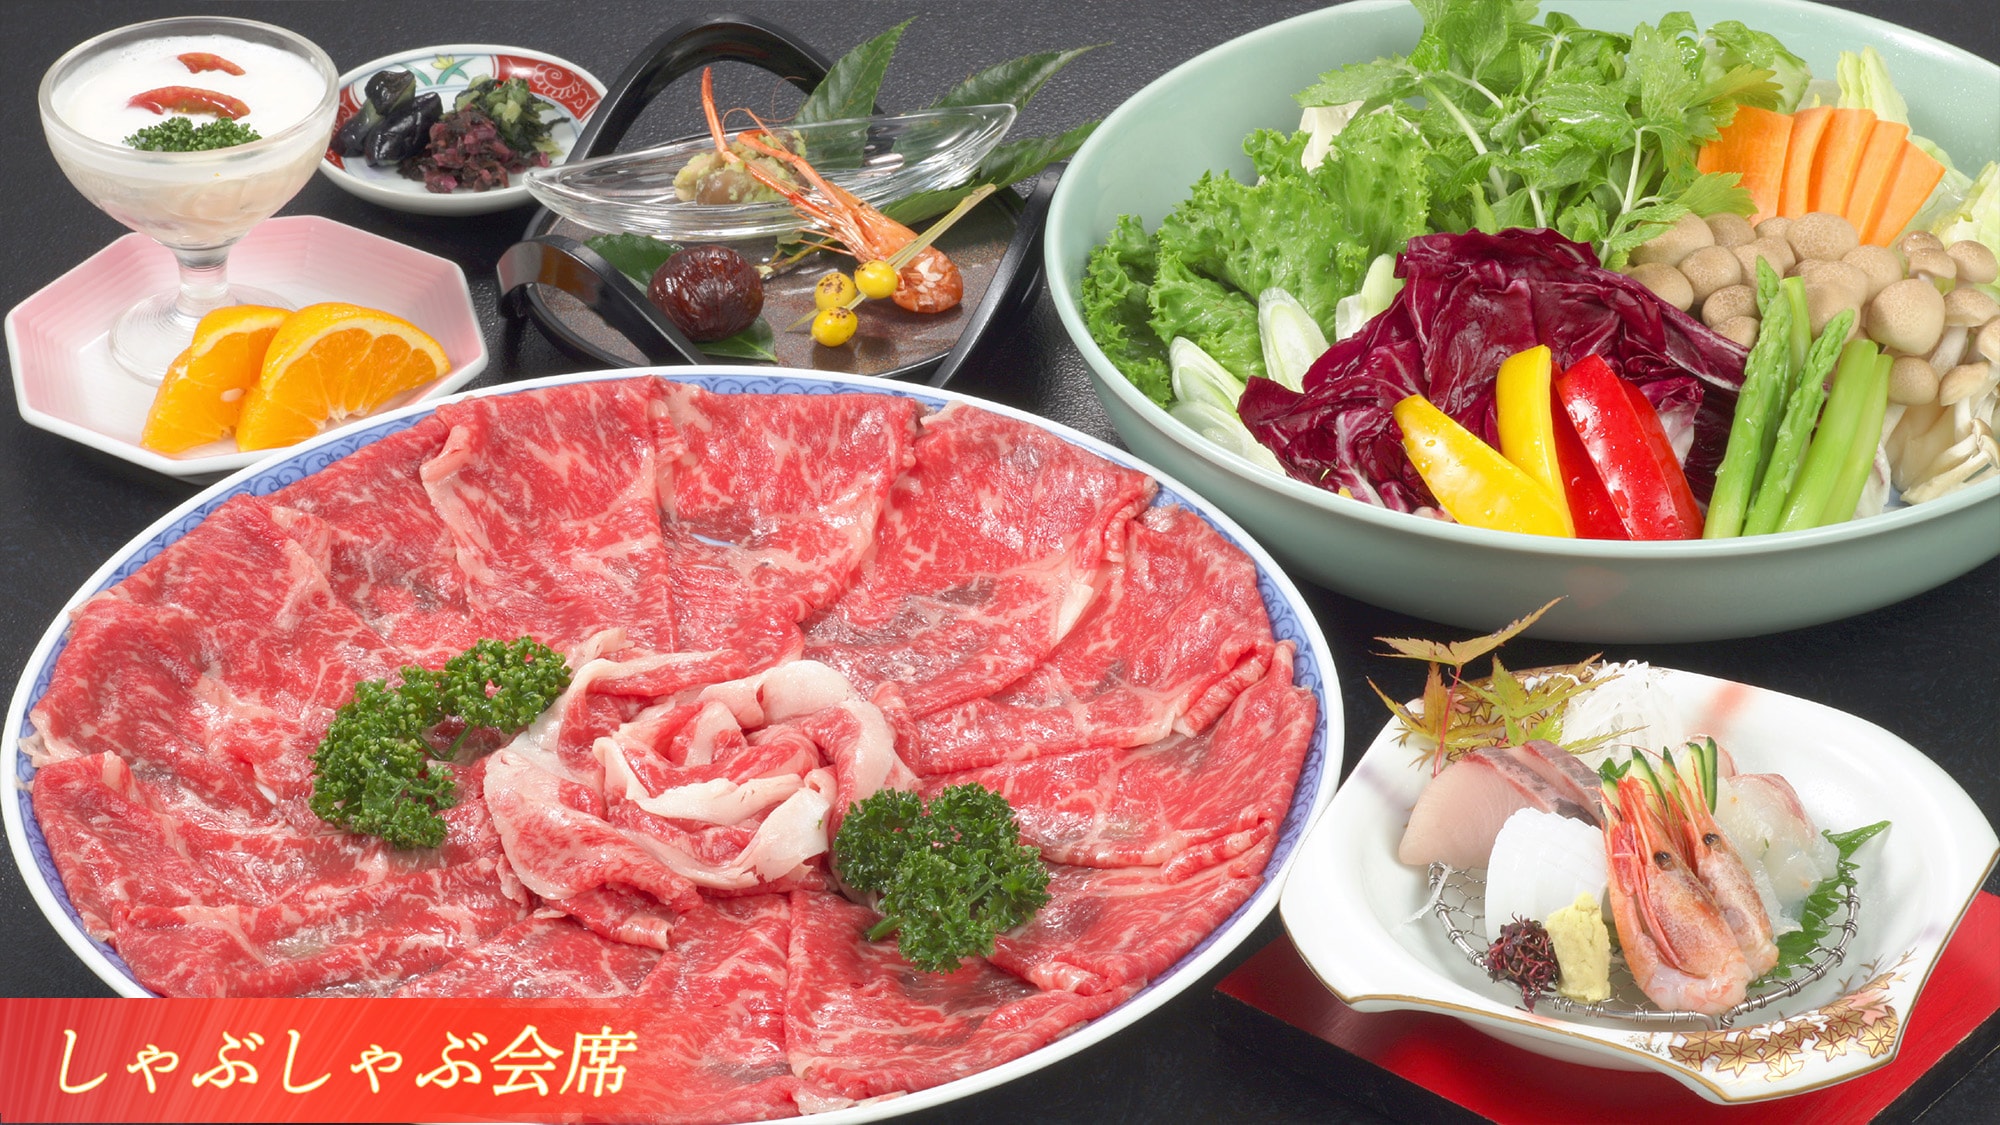 [Shabu-shabu Kaiseki]-You can enjoy simmering beef shabu-shabu.